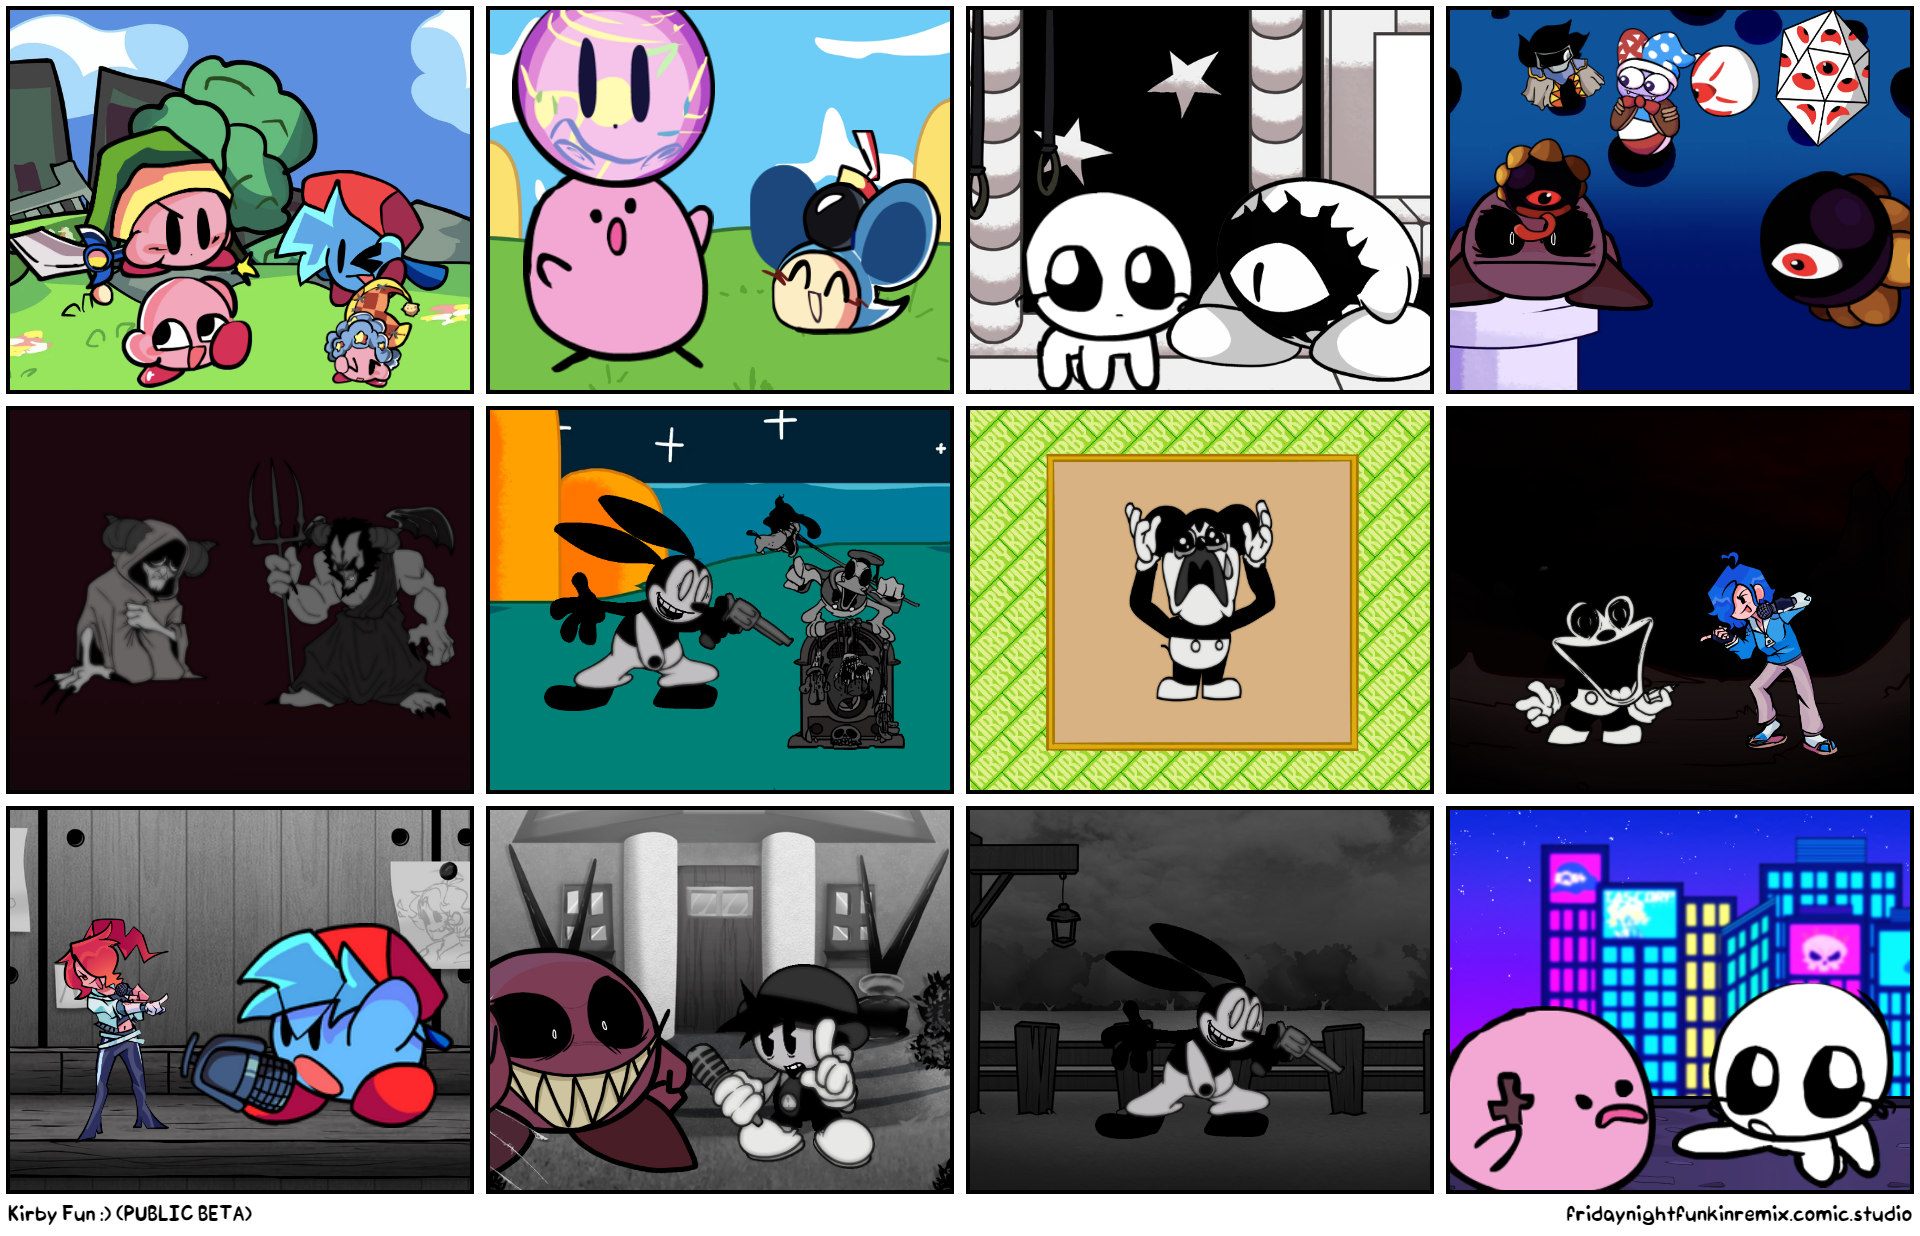 Kirby Fun :) (PUBLIC BETA)